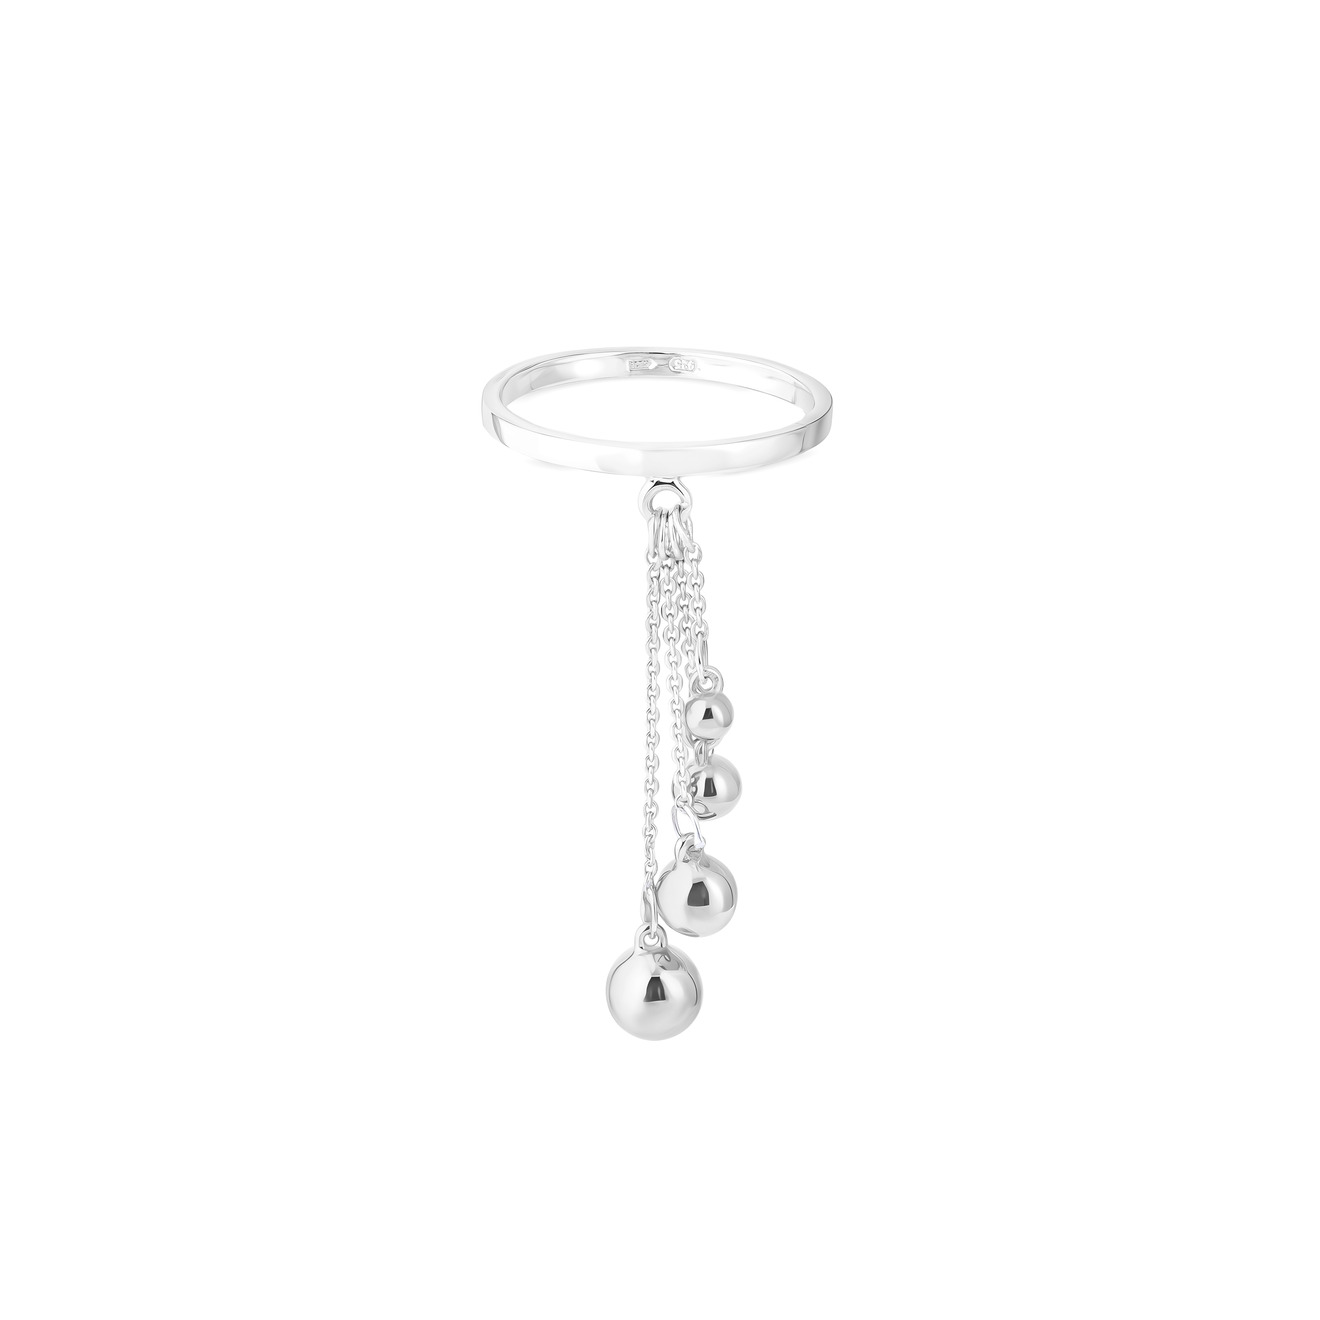 УРА jewelry Кольцо из серебра с шариками на цепочке цена и фото